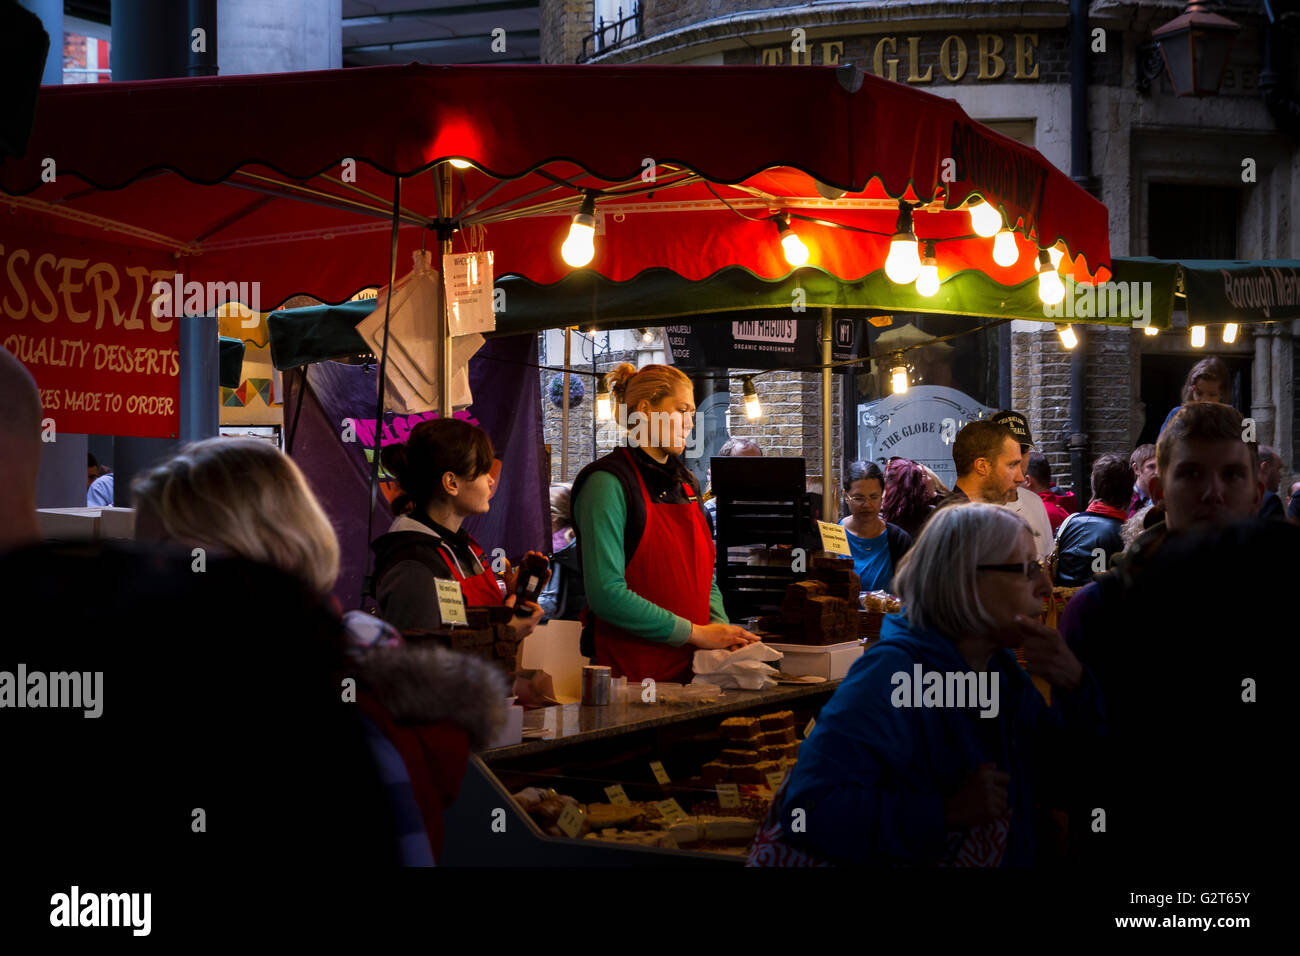 Ein Markthändler an einem Stand im Borough Market, Bermondsey, einem der renommiertesten Lebensmittel- und Getränkemärkte Londons, London, Großbritannien Stockfoto